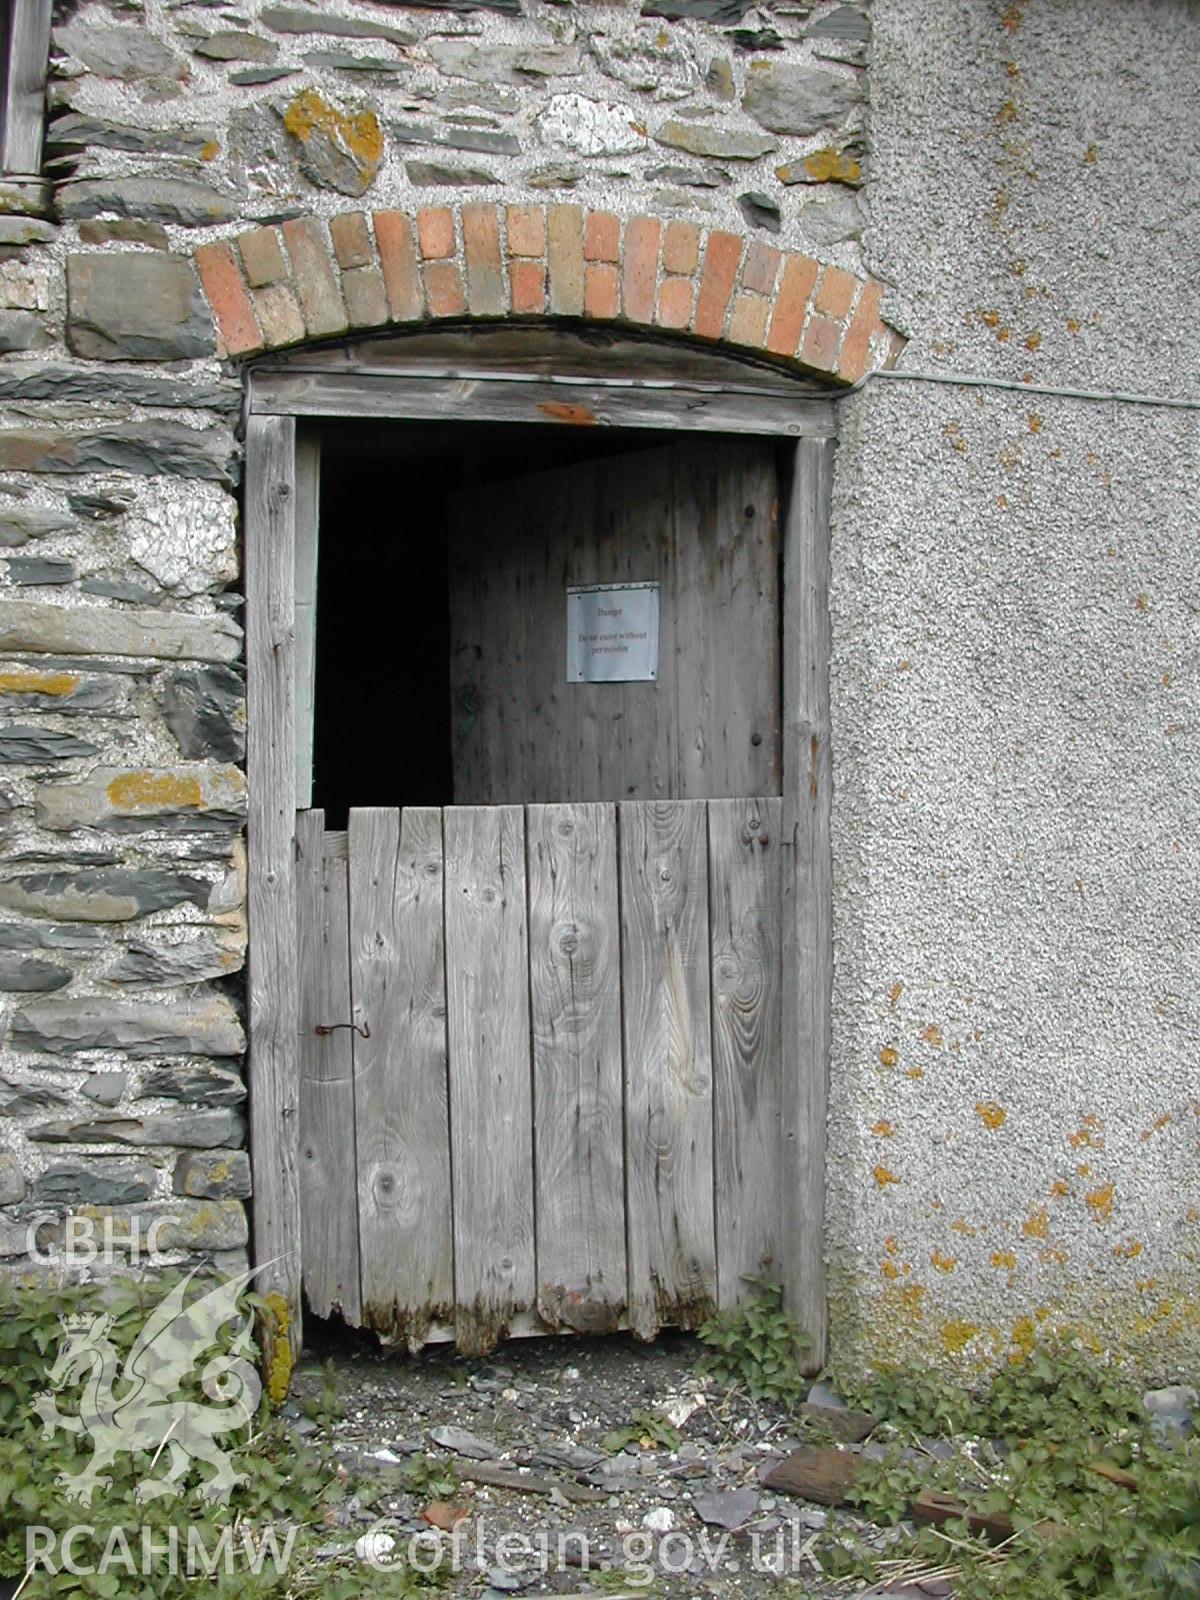 Exterior, showing stable door